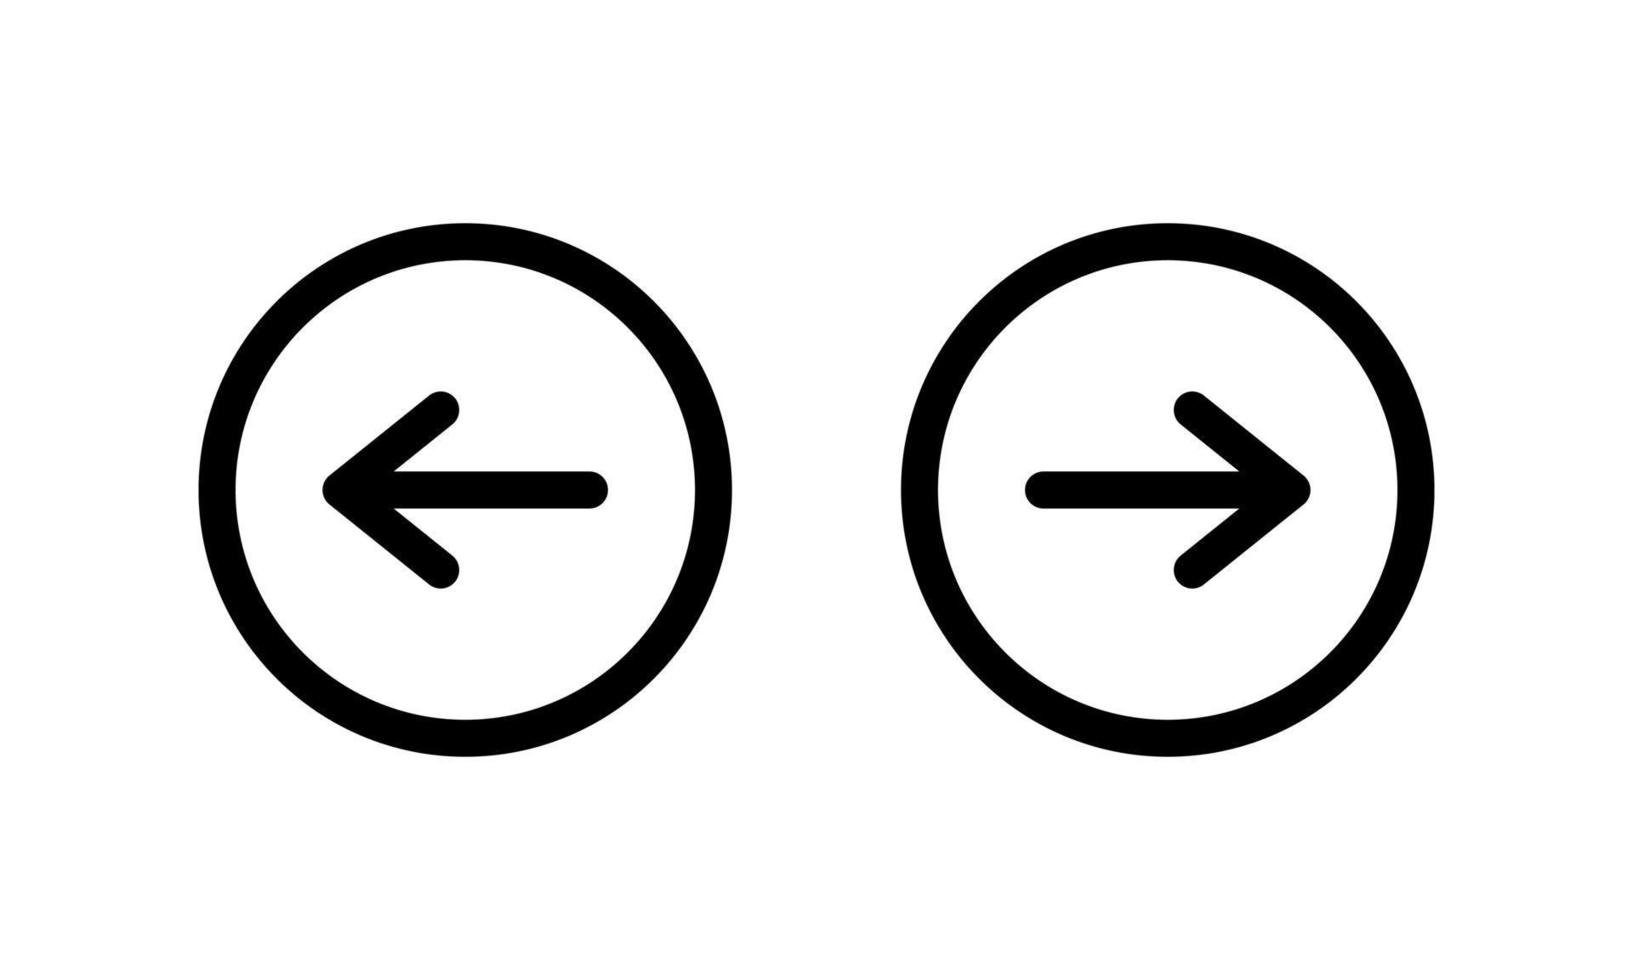 tournez le vecteur d'icône de flèche droite et gauche dans la ligne de cercle